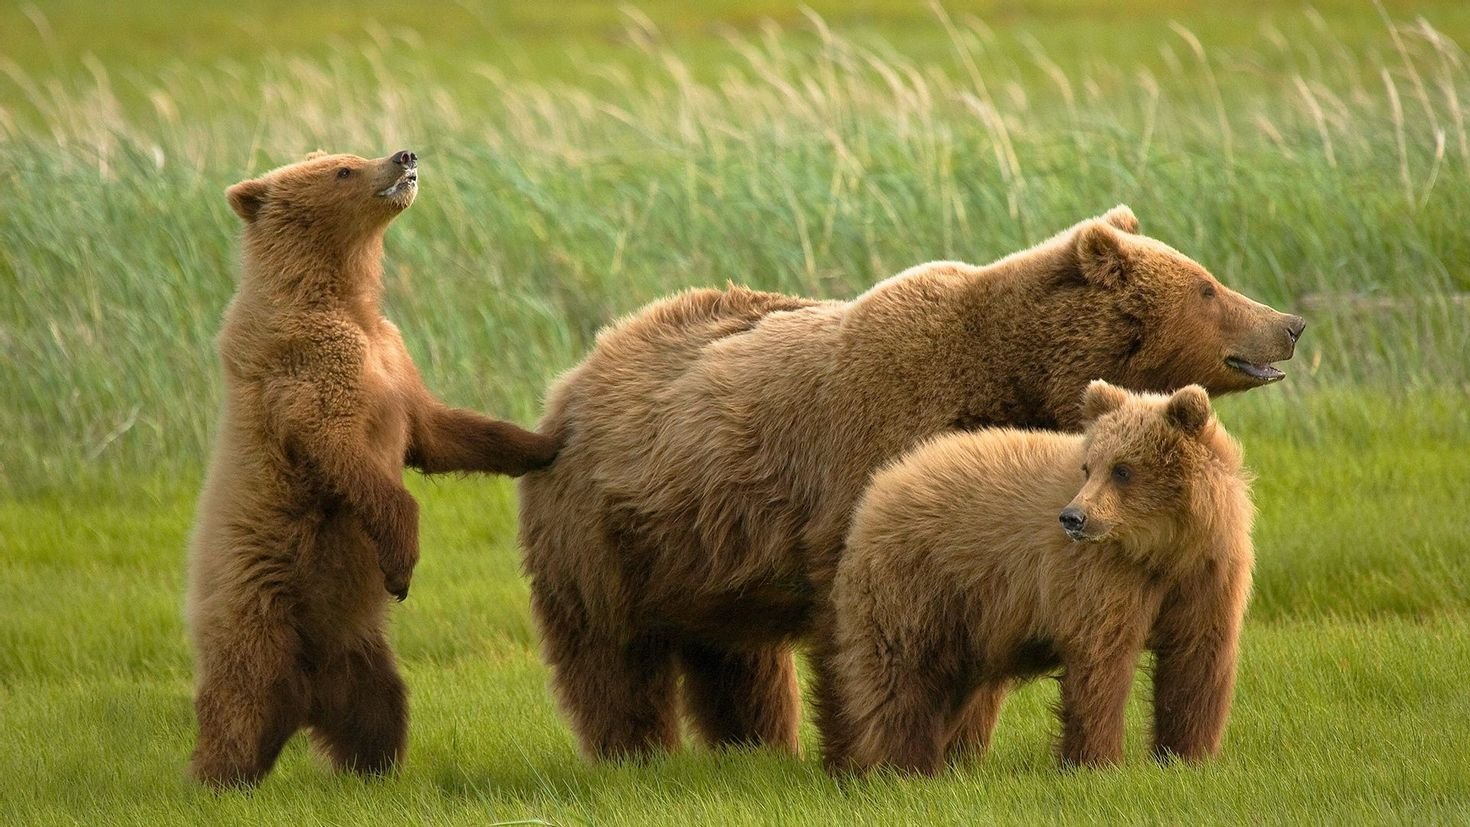 Grizzly медведь: изображения без лицензионных платежей